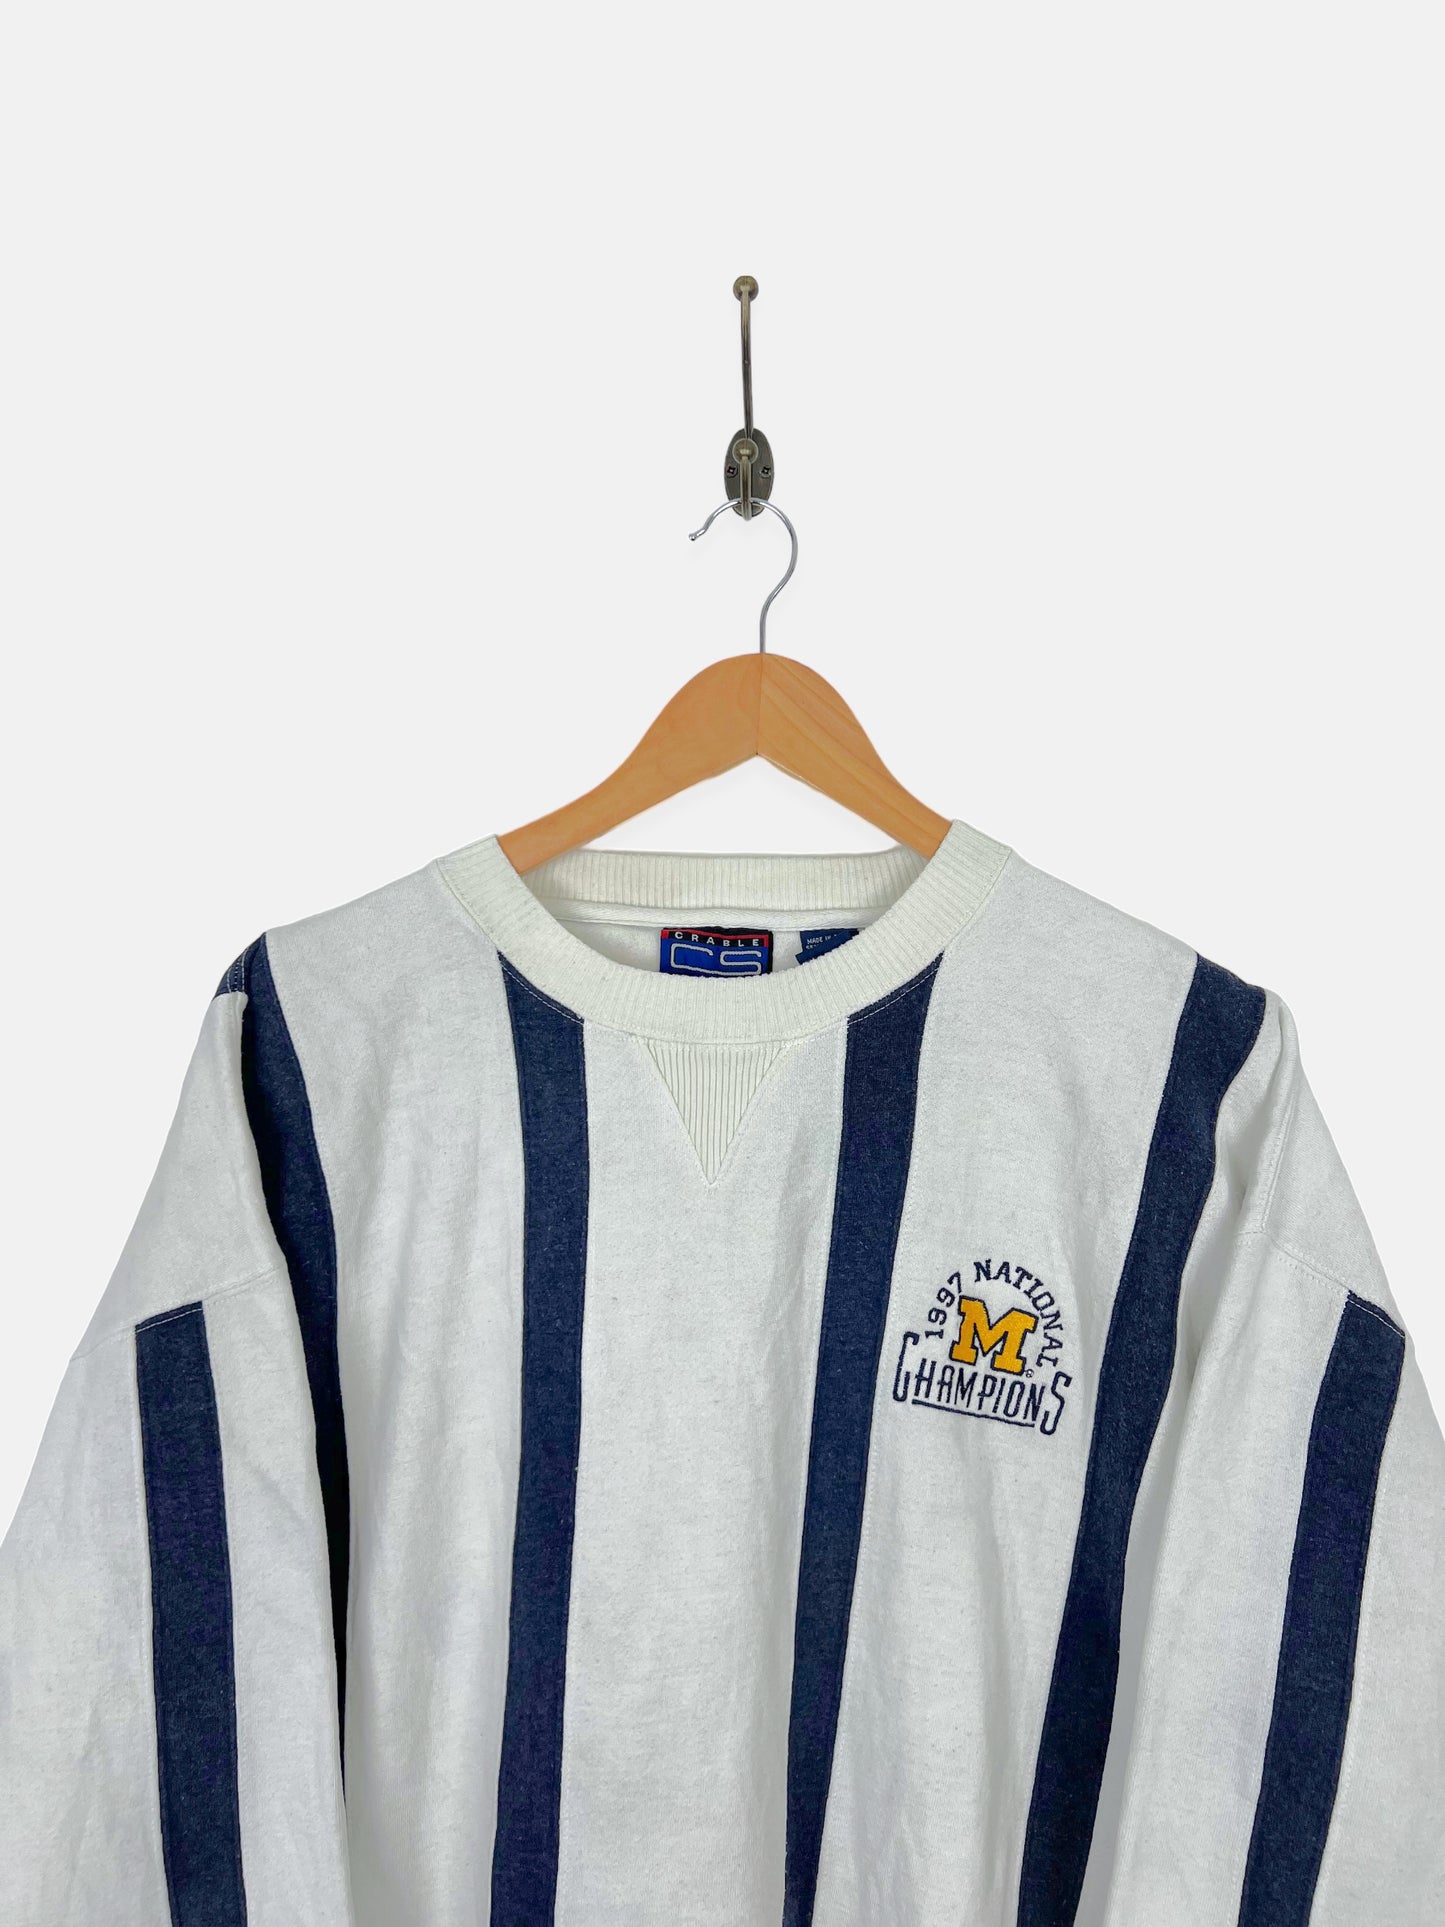 1997 Michigan Wolverines Embroidered Vintage Sweatshirt Size L